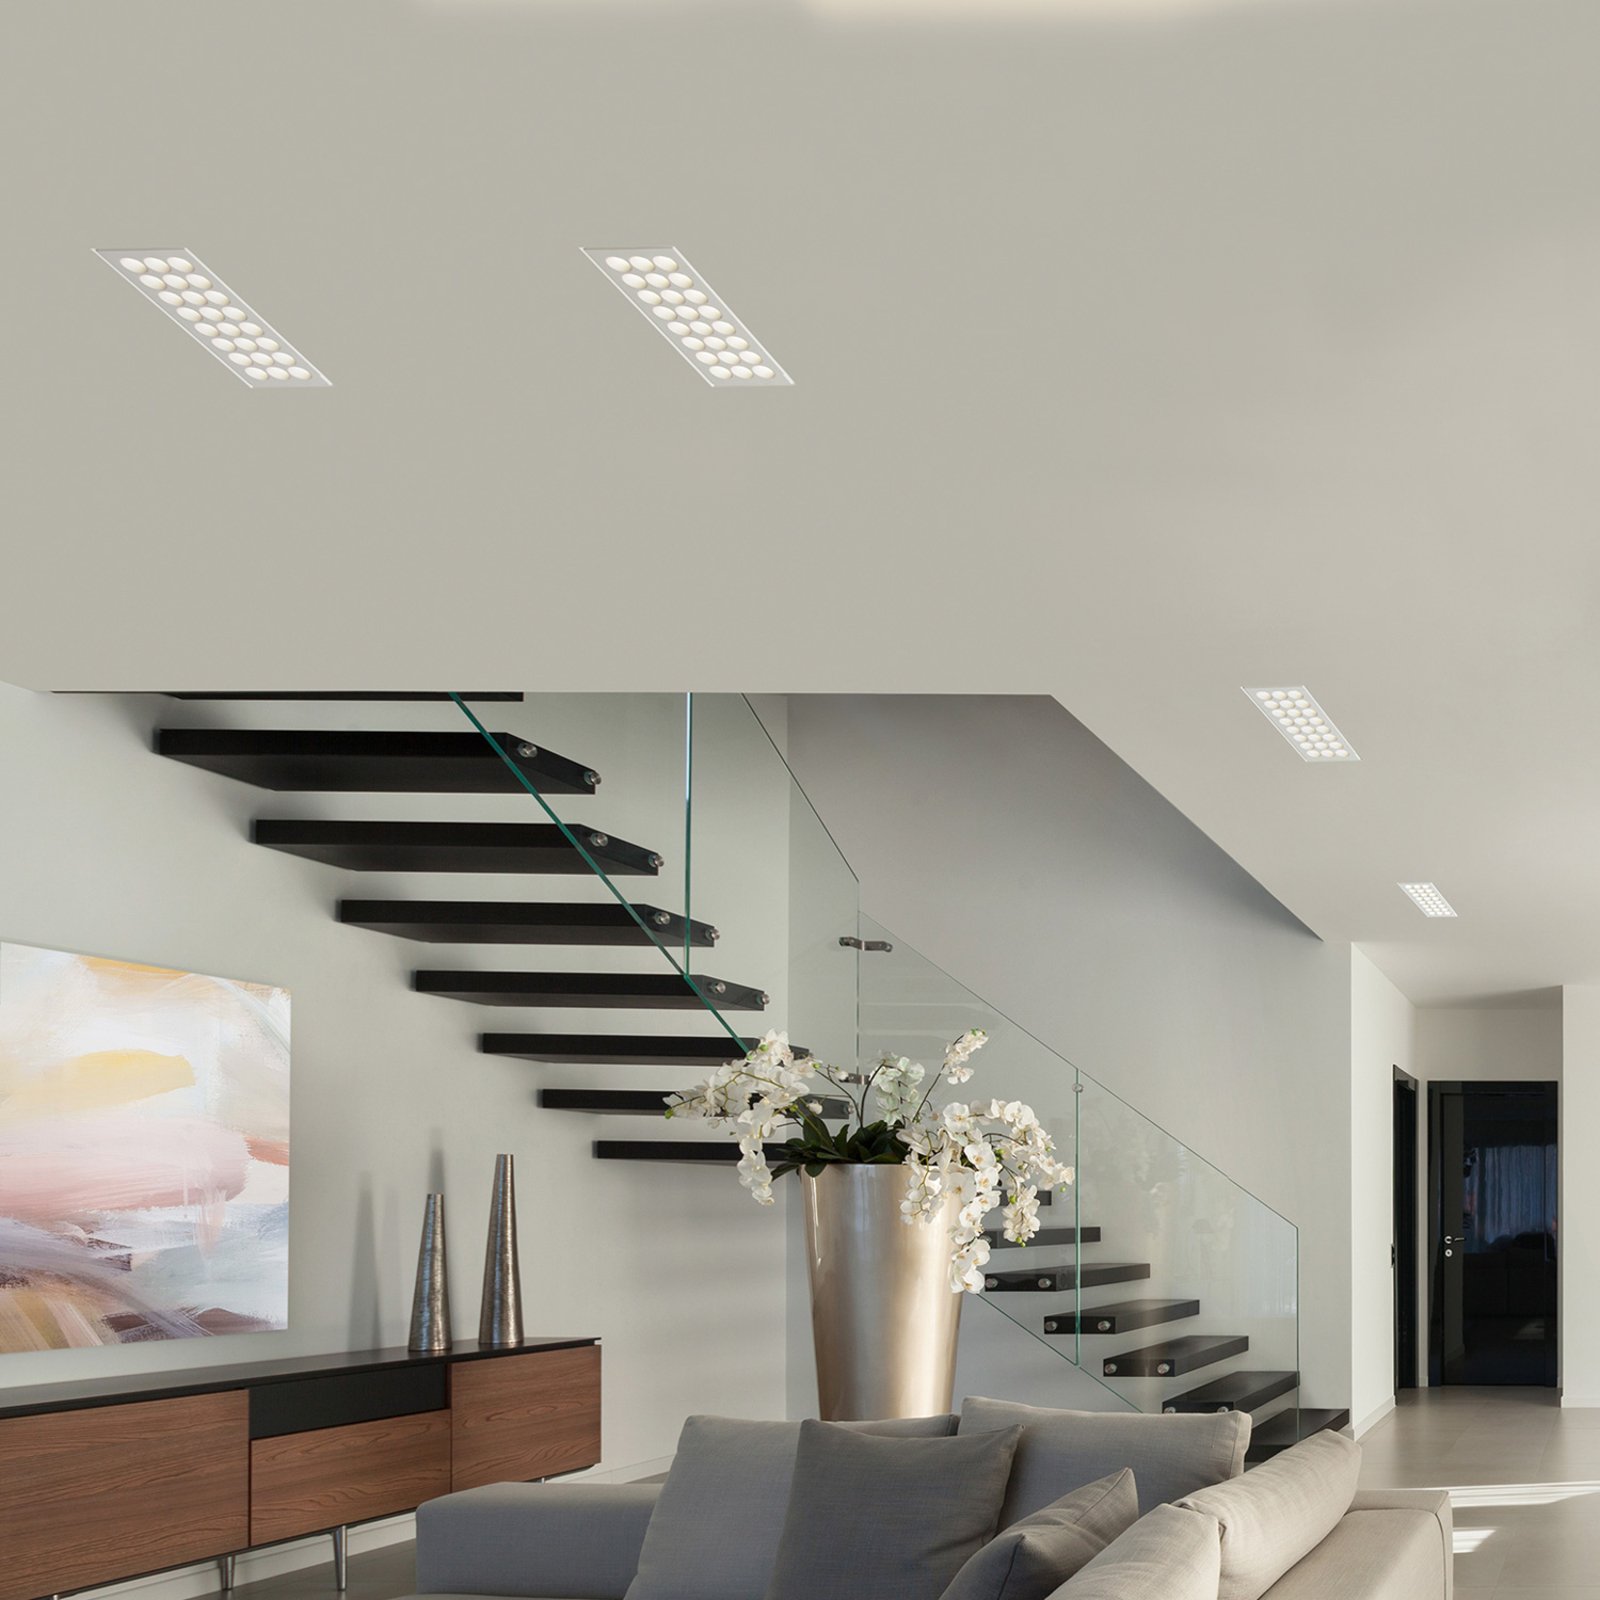 LED plafond inbouwlamp Ade T282 - 21,5 cm x 11 cm